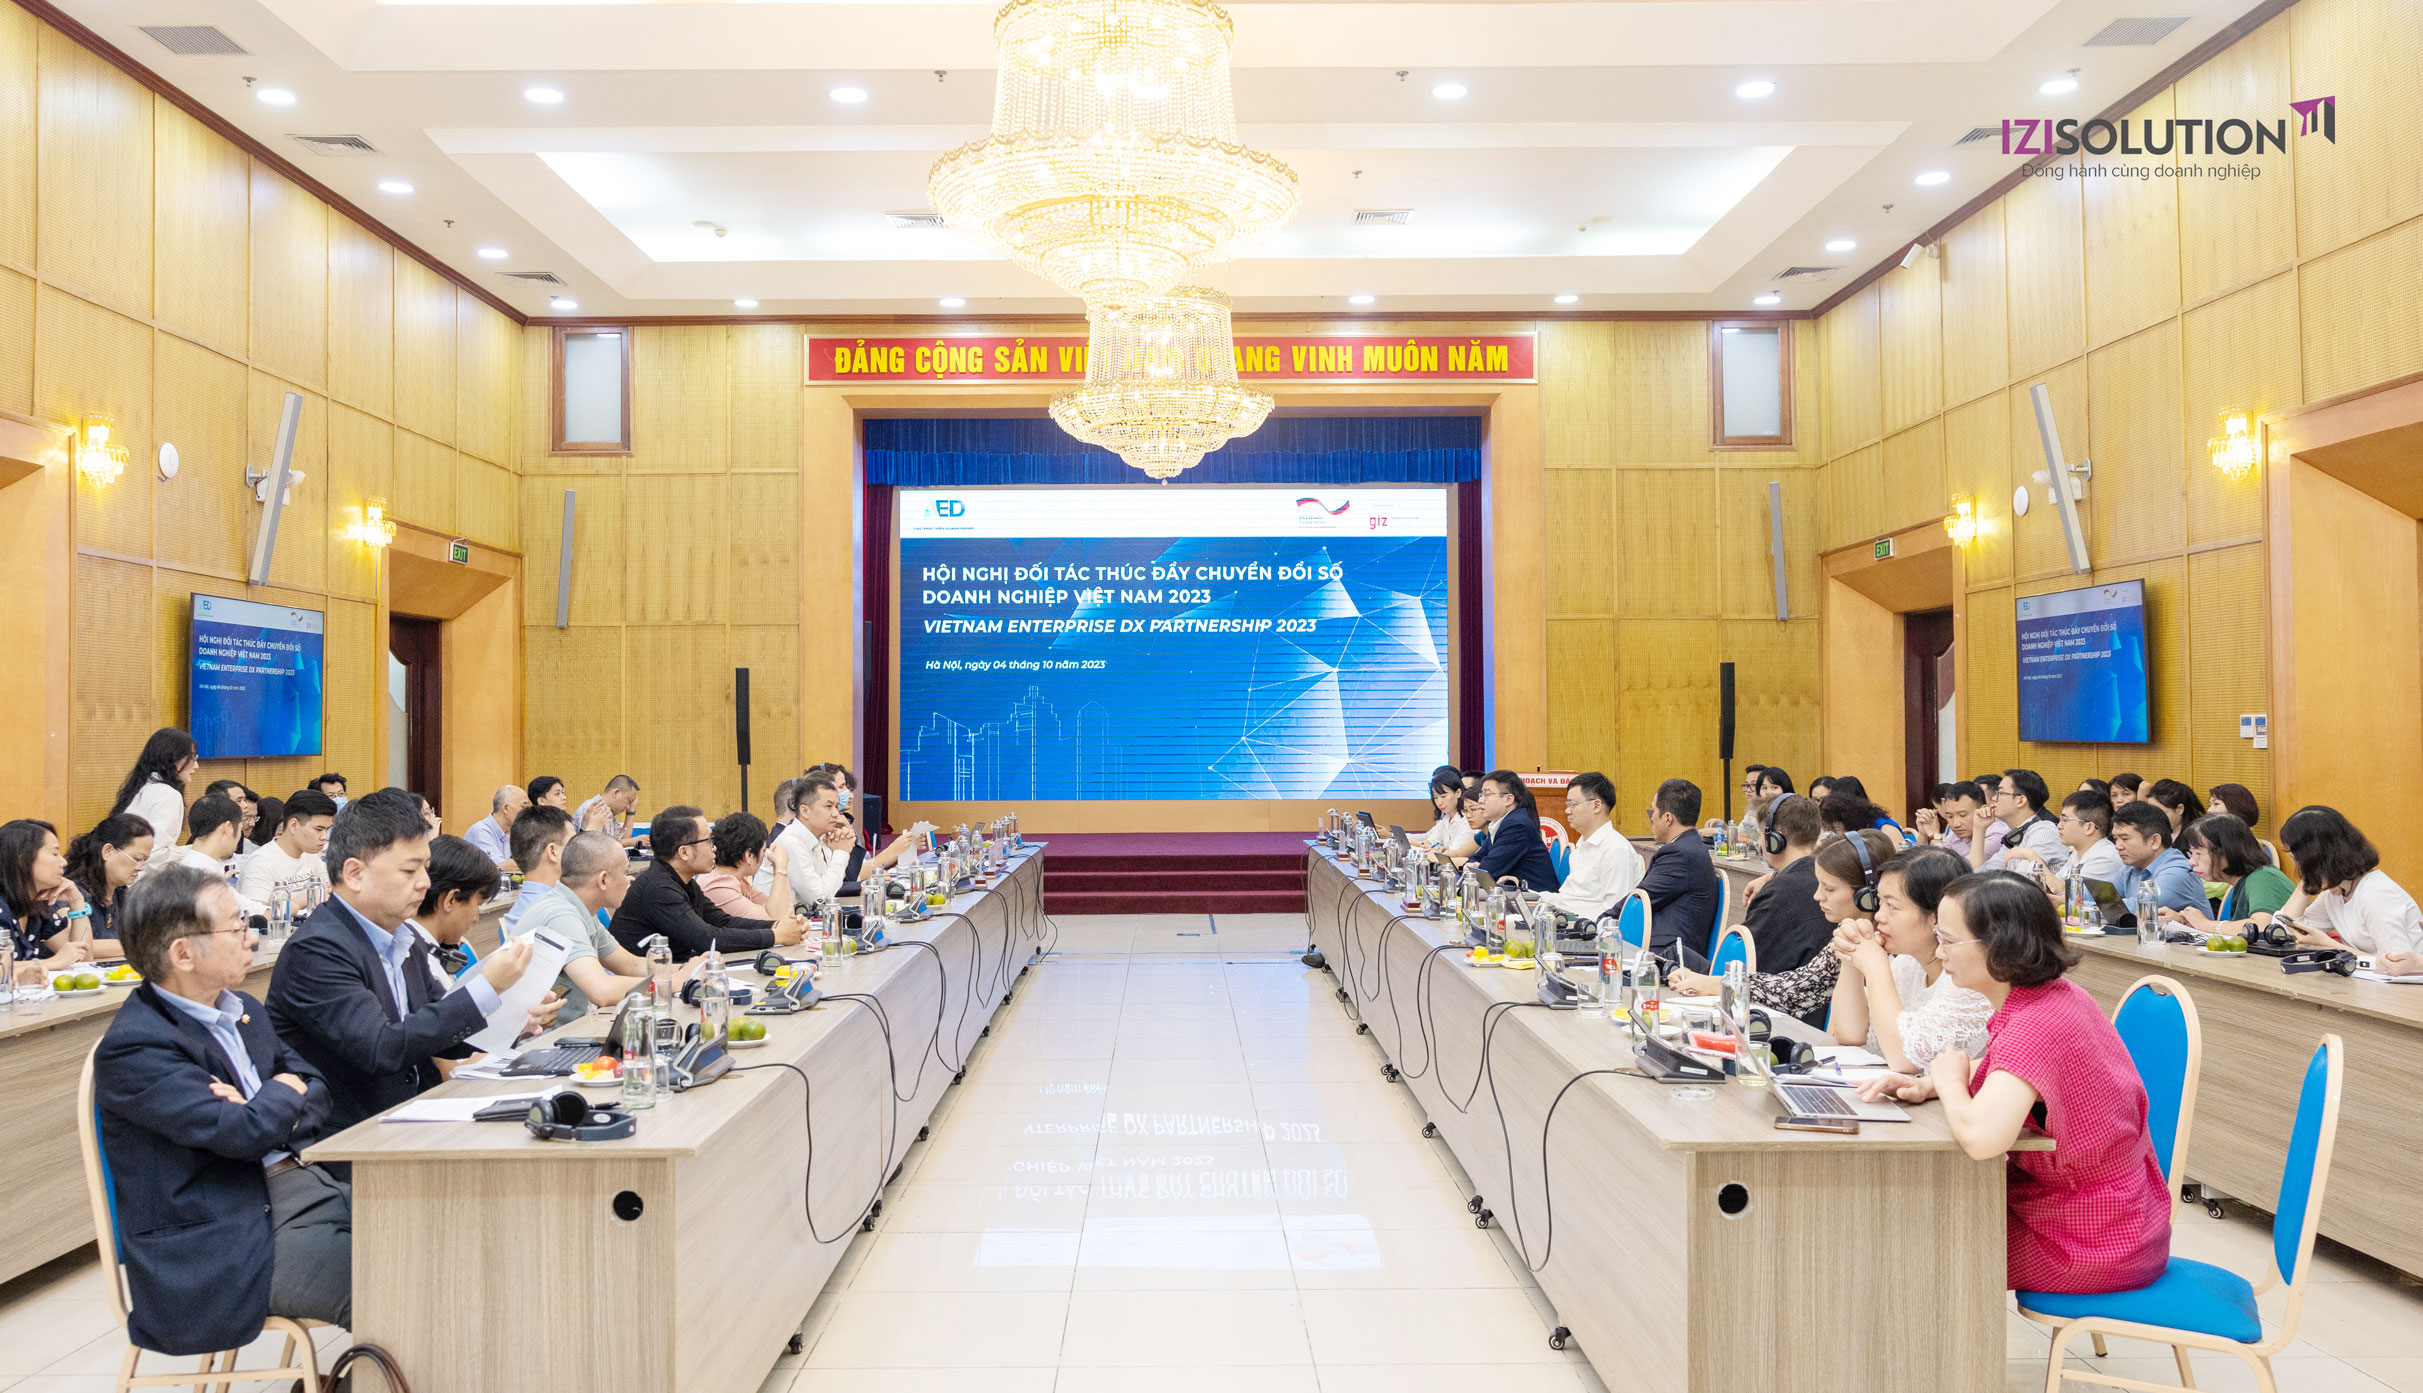 IZISolution Tham Gia Hội Nghị Đối Tác Thúc Đẩy Chuyển Đổi Số Doanh Nghiệp Việt Nam 2023 1